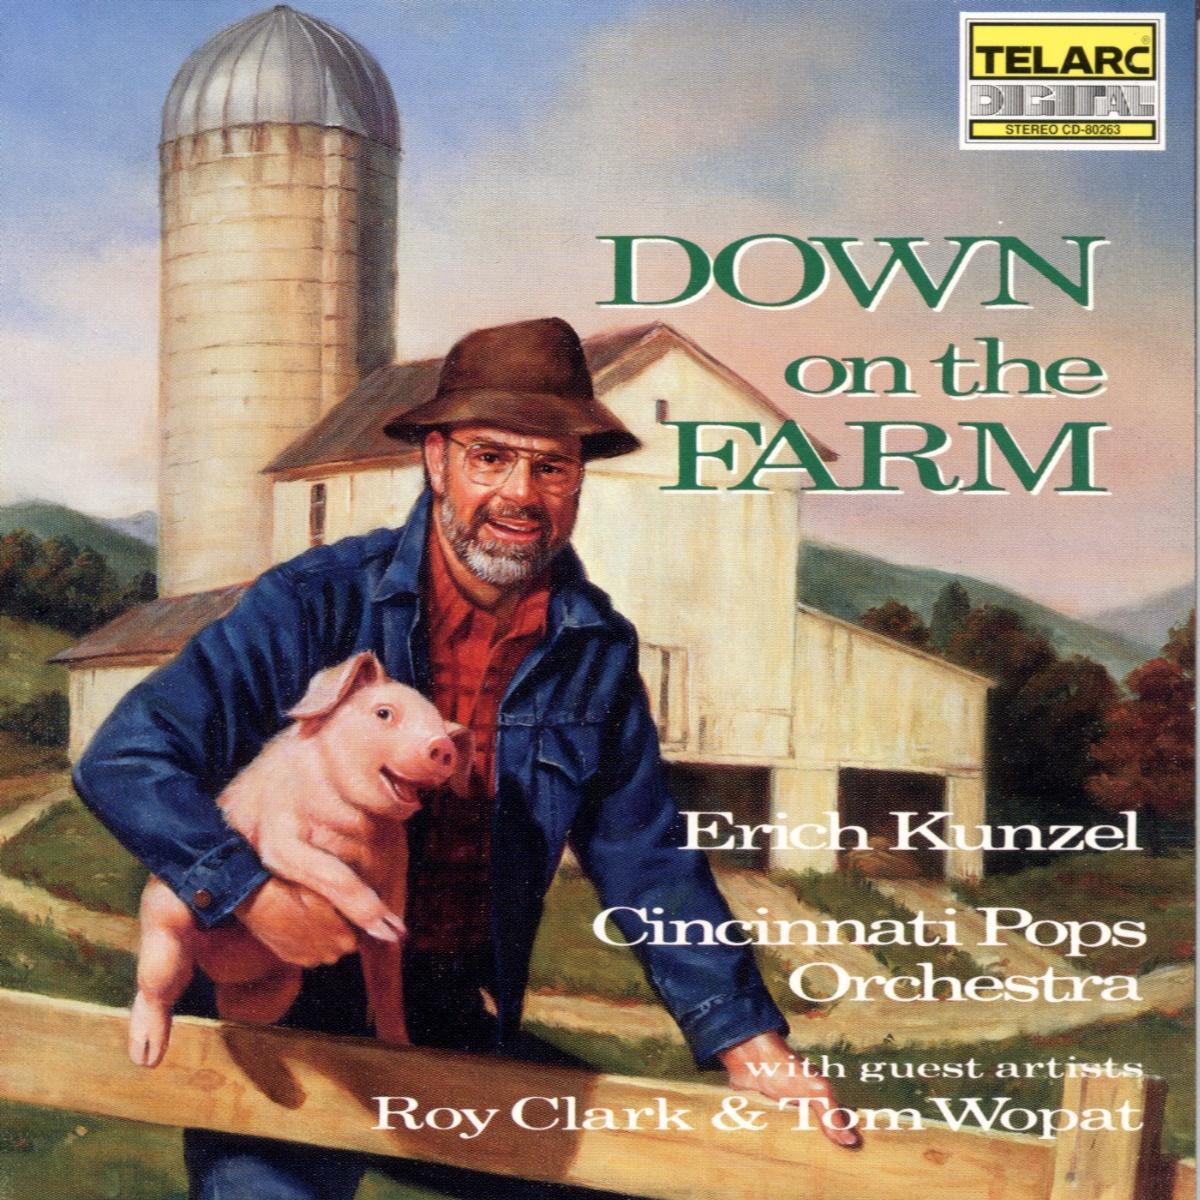 Down On The Farm - Cincinnati Pops Orchestra